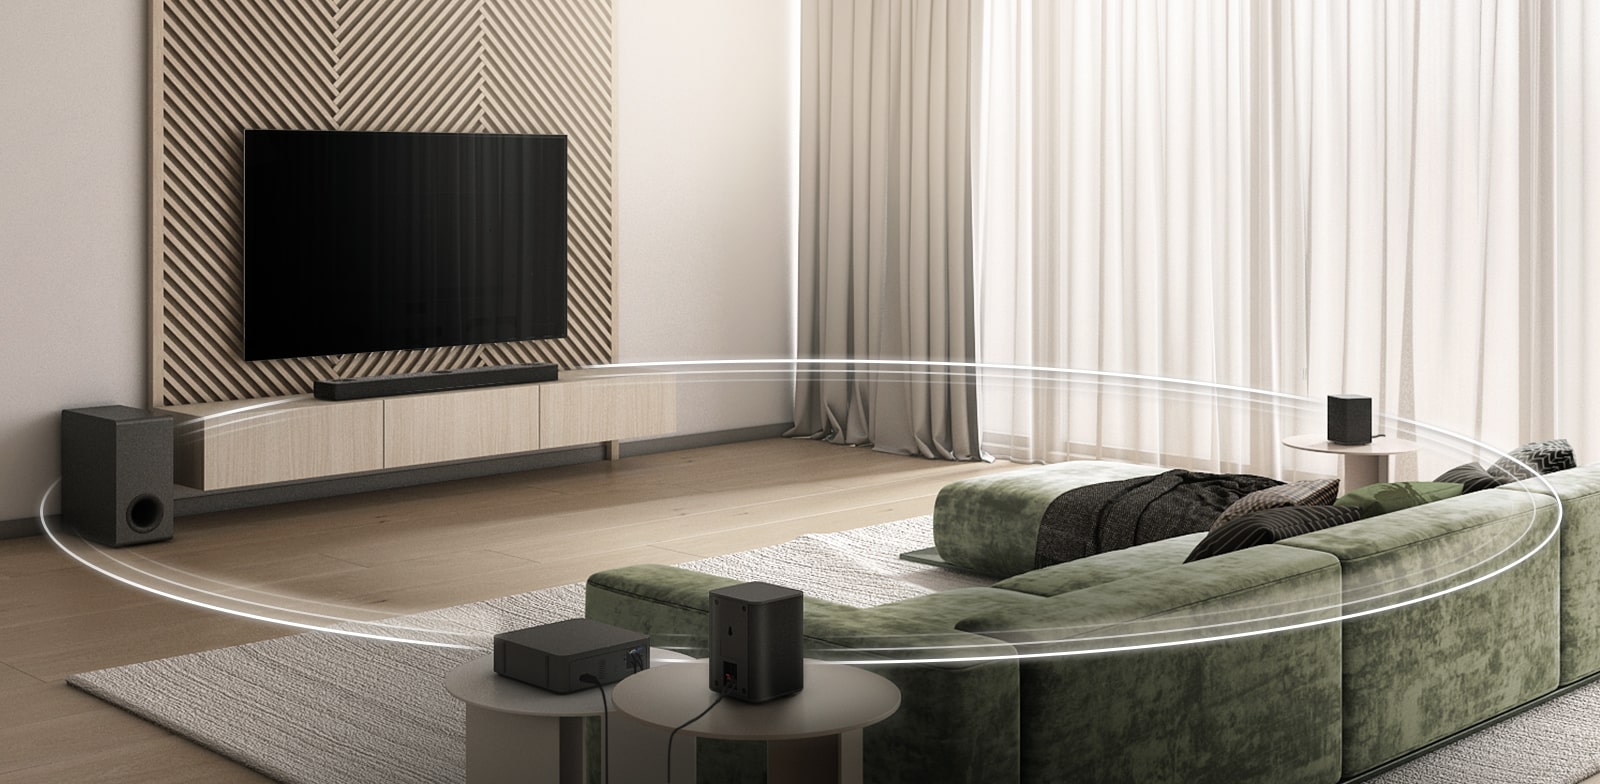 טלוויזיית LG תלויה על הקיר והסאונד-בר מותקן מתחת לטלוויזיה. הסאב-וופר מונח על הרצפה ו-2 הרמקולים האחוריים מונחים מאחור בסלון.